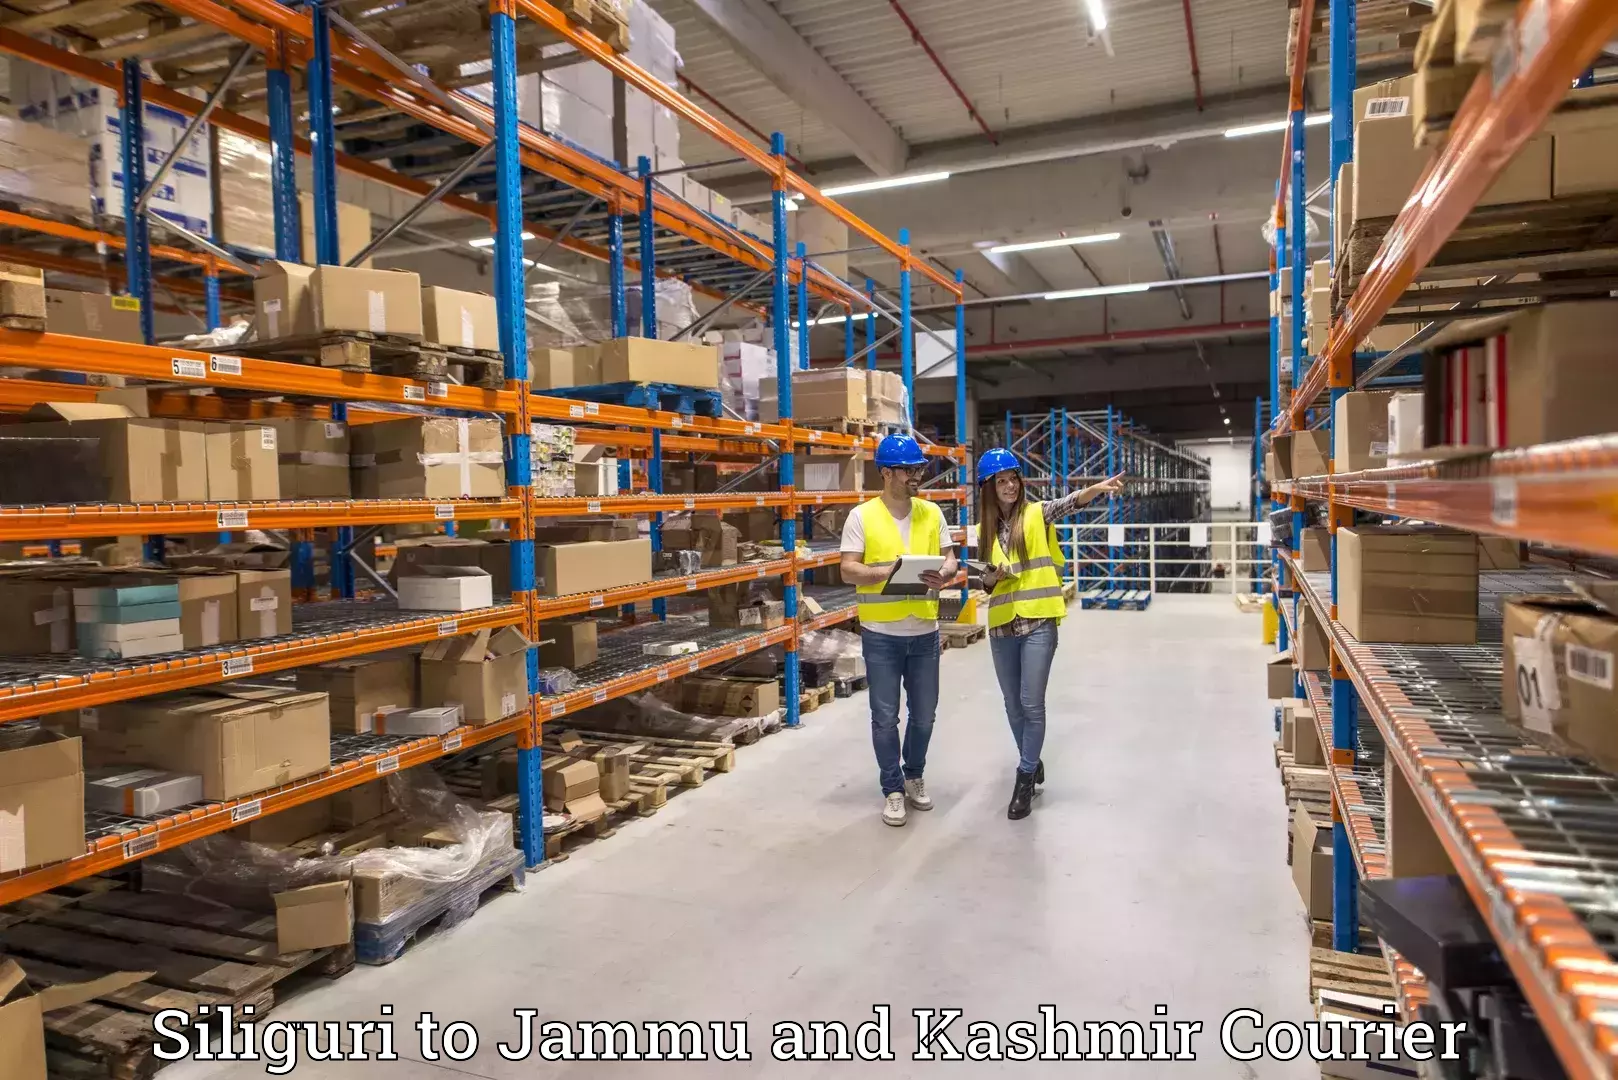 Customer-centric shipping Siliguri to Jammu